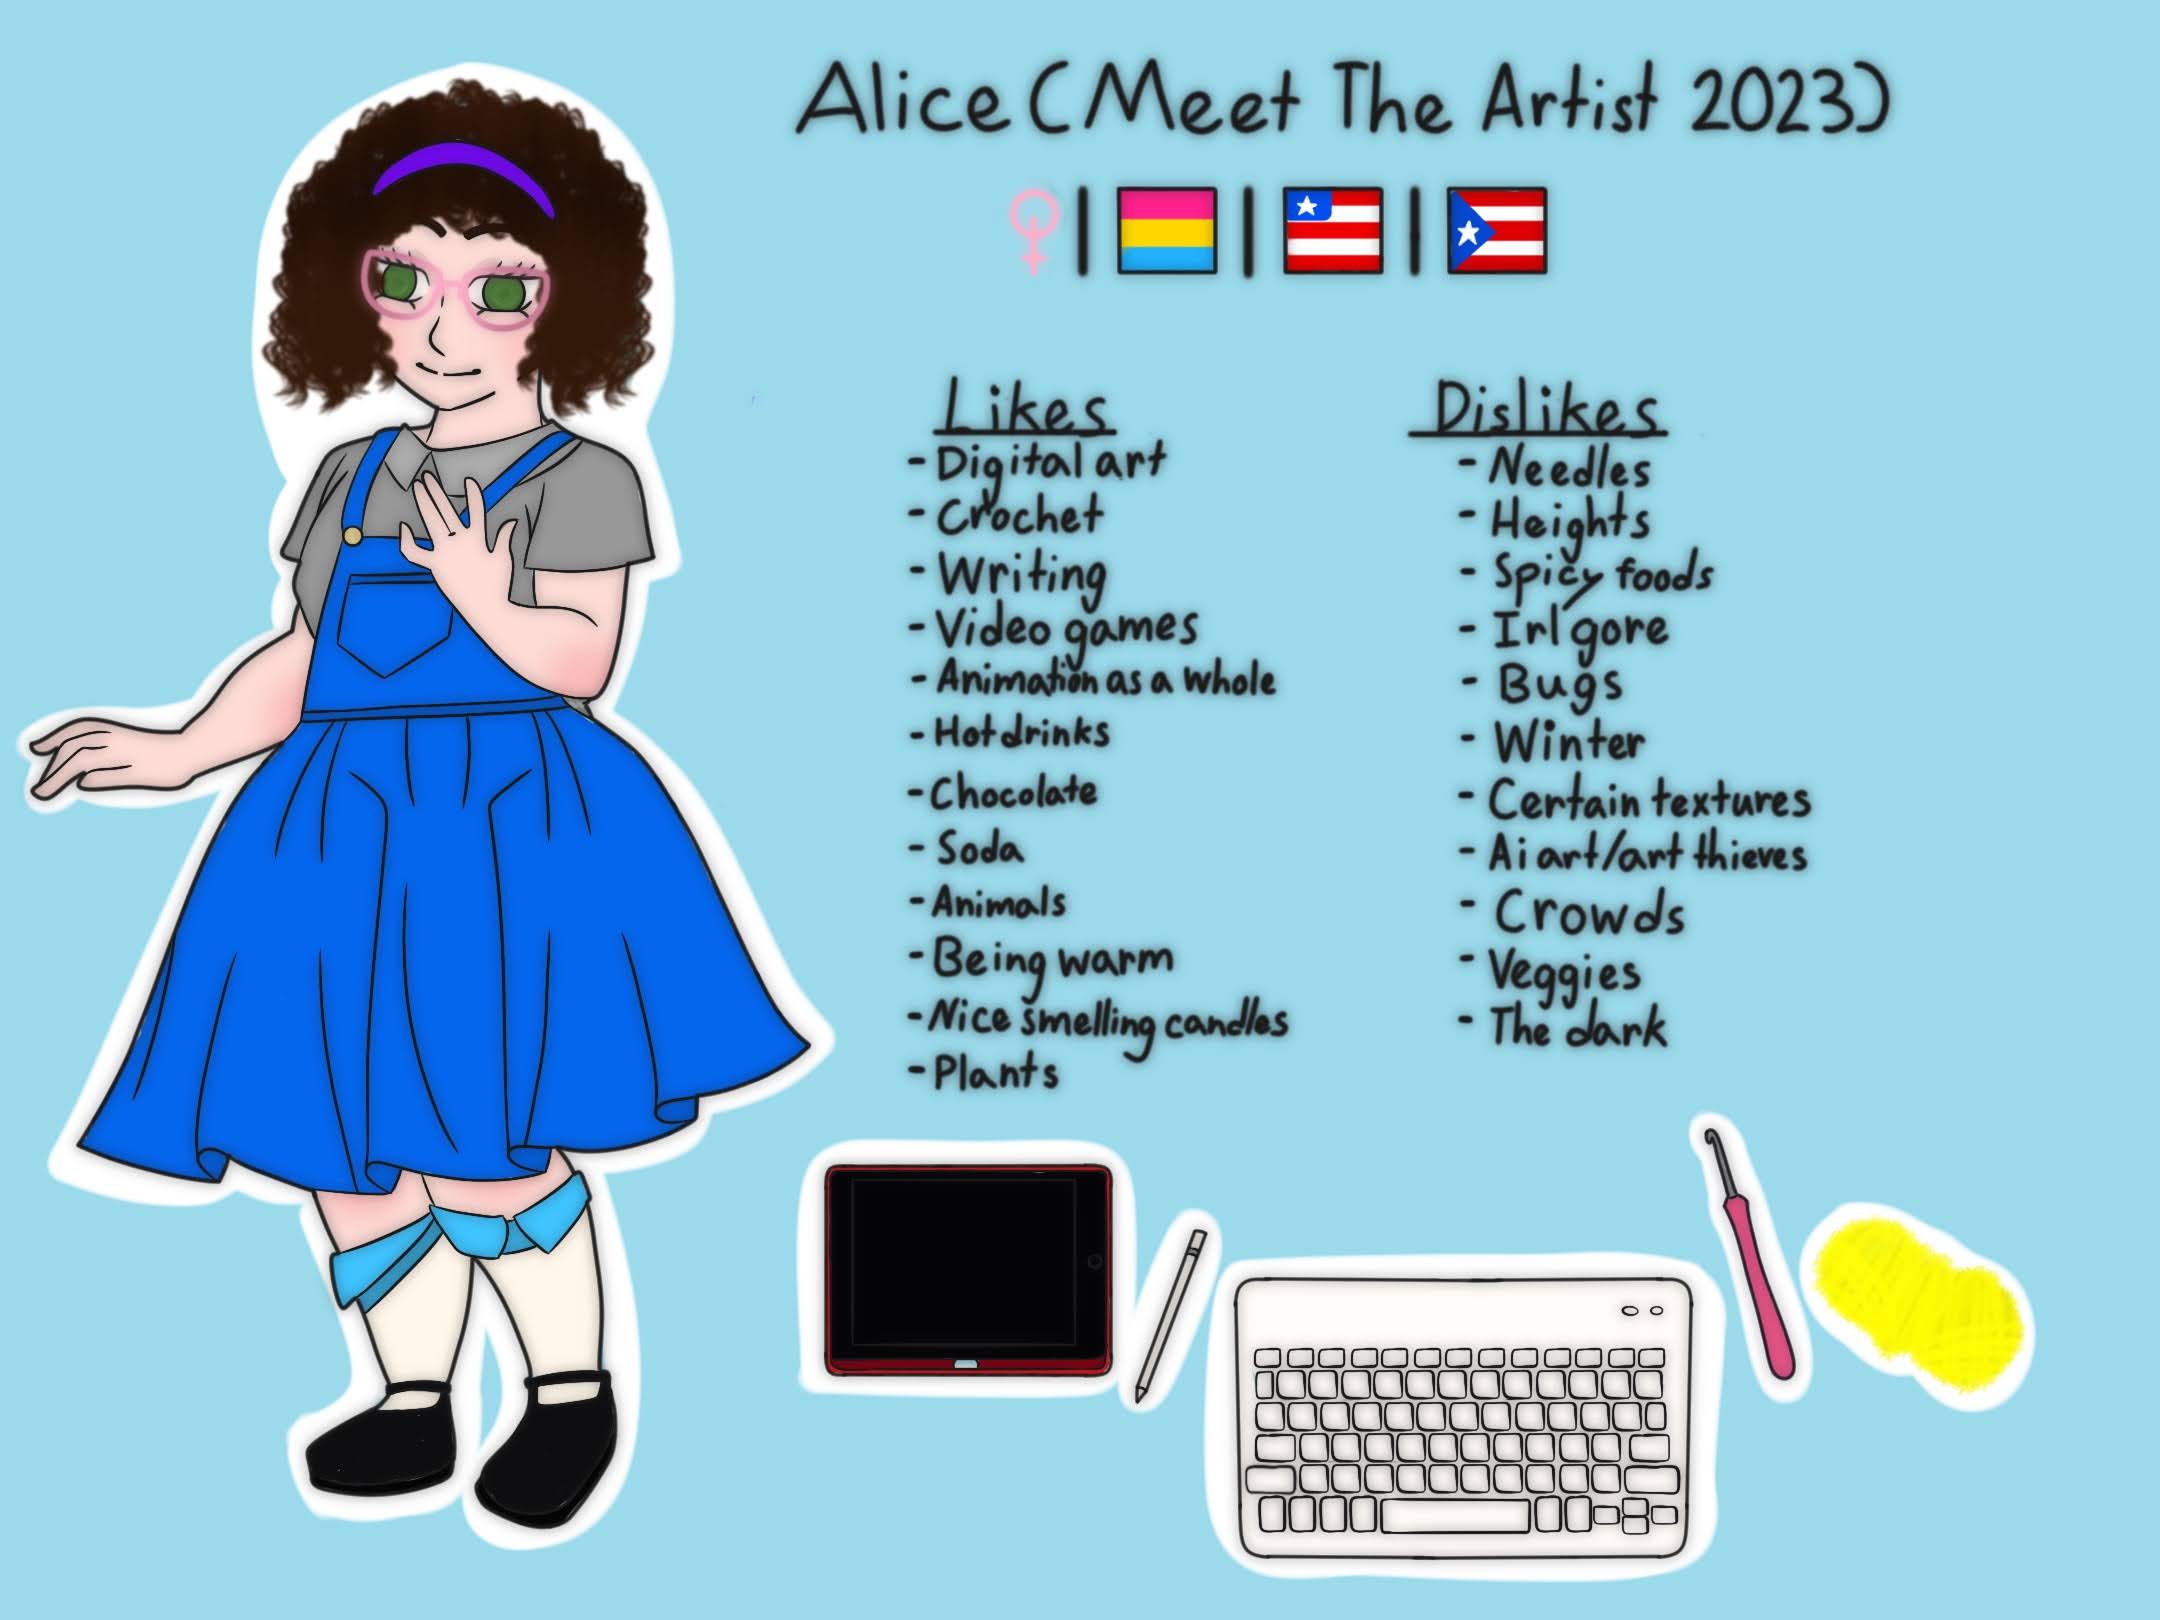 Meet The Artist 2023